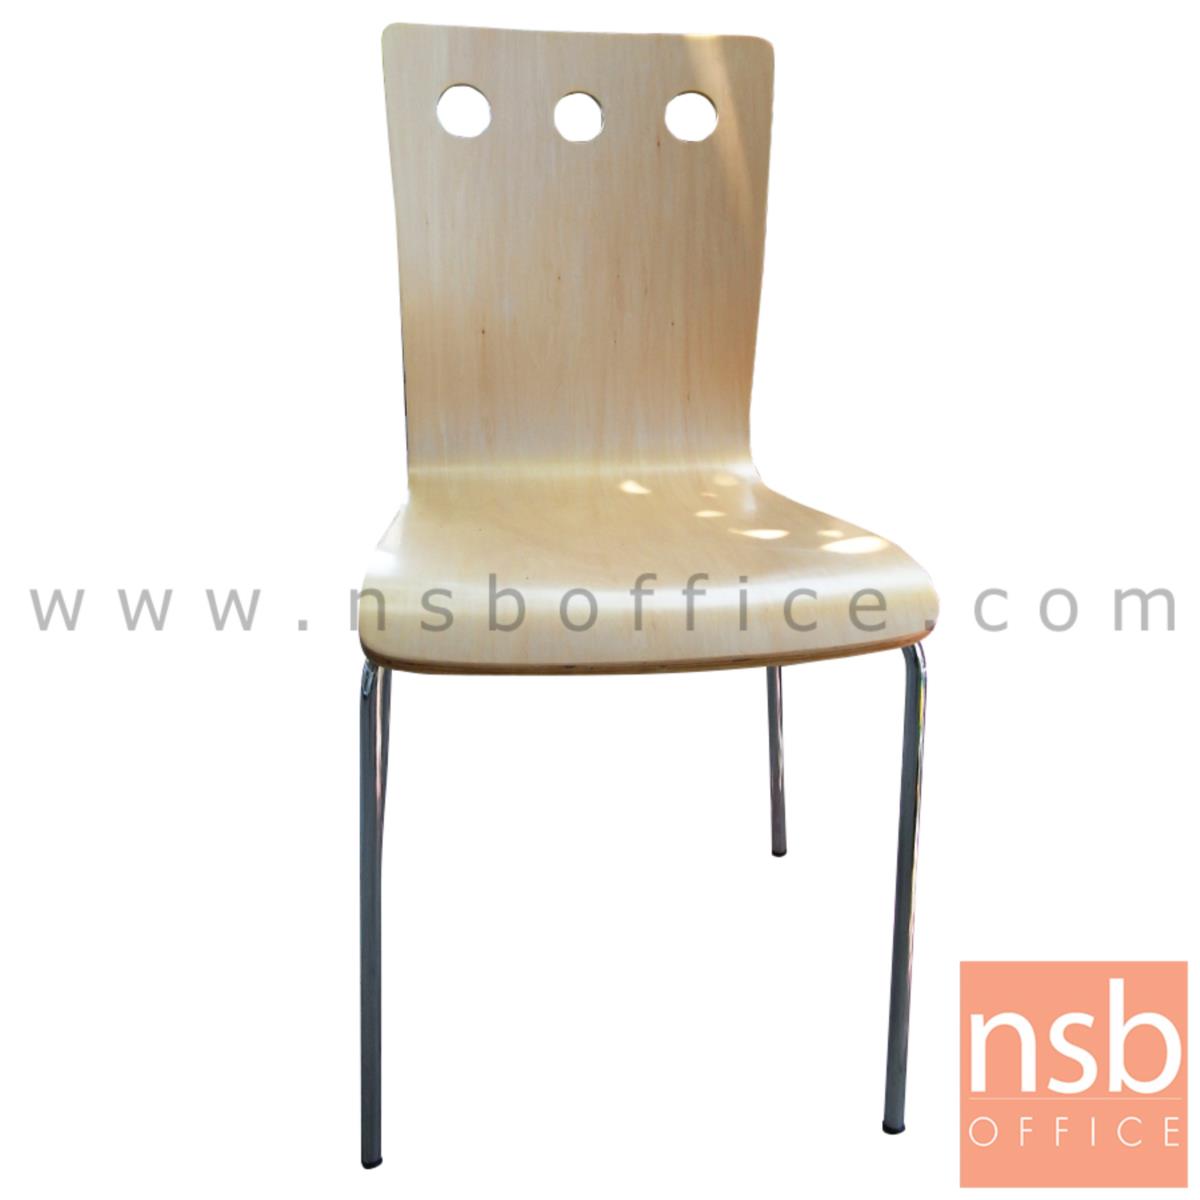 B20A055:เก้าอี้อเนกประสงค์ไม้วีเนียร์ดัด รุ่น BH-141- PEBBLE   ขาเหล็กชุบโครเมี่ยม